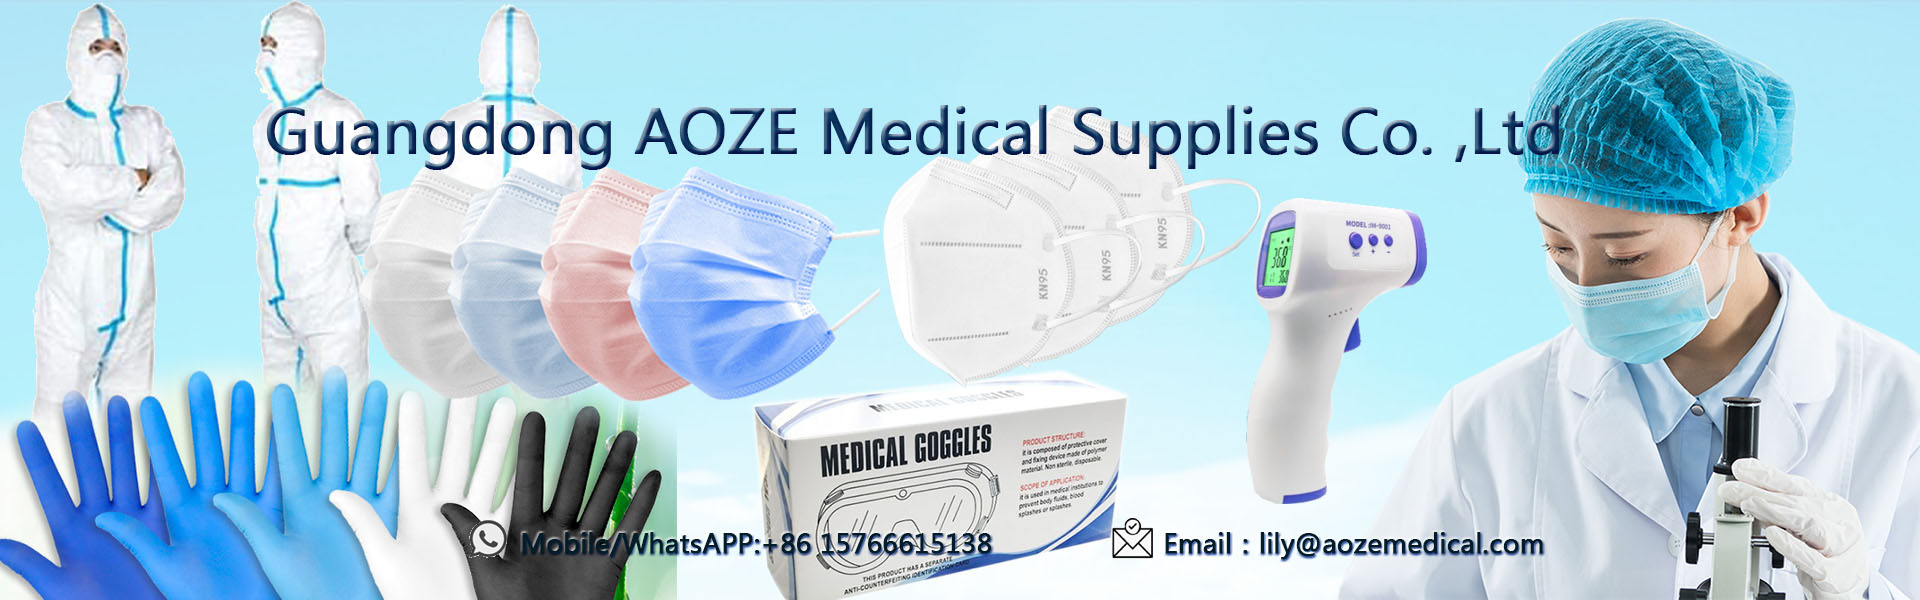 Mặt nạ 3ply dùng một lần, mặt nạ kn95, mặt nạ phẫu thuật,Guangdong AOZE Medical Supplies Co.,Ltd